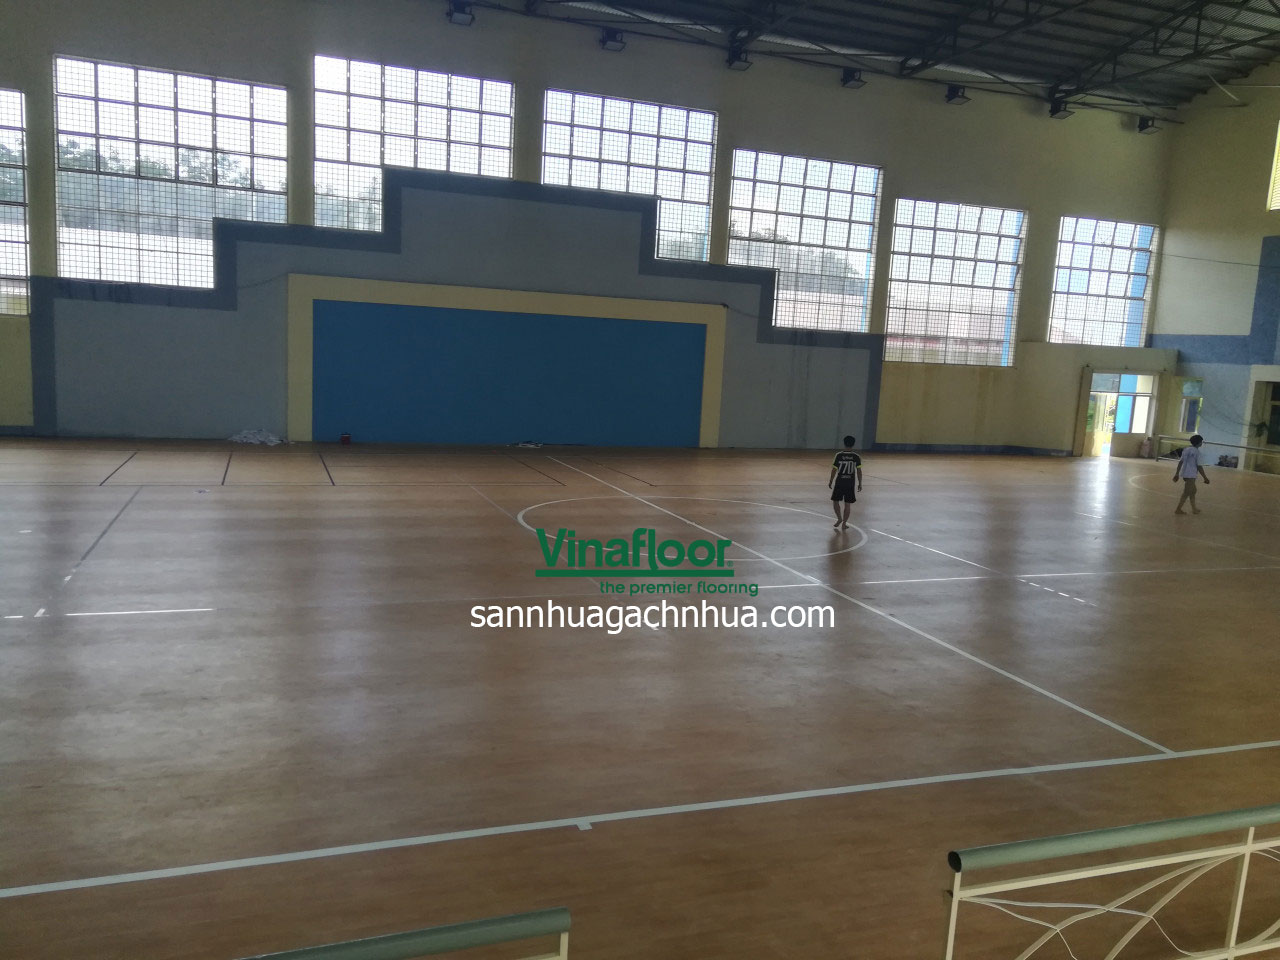 sàn thể thao tỉnh Bình Phước